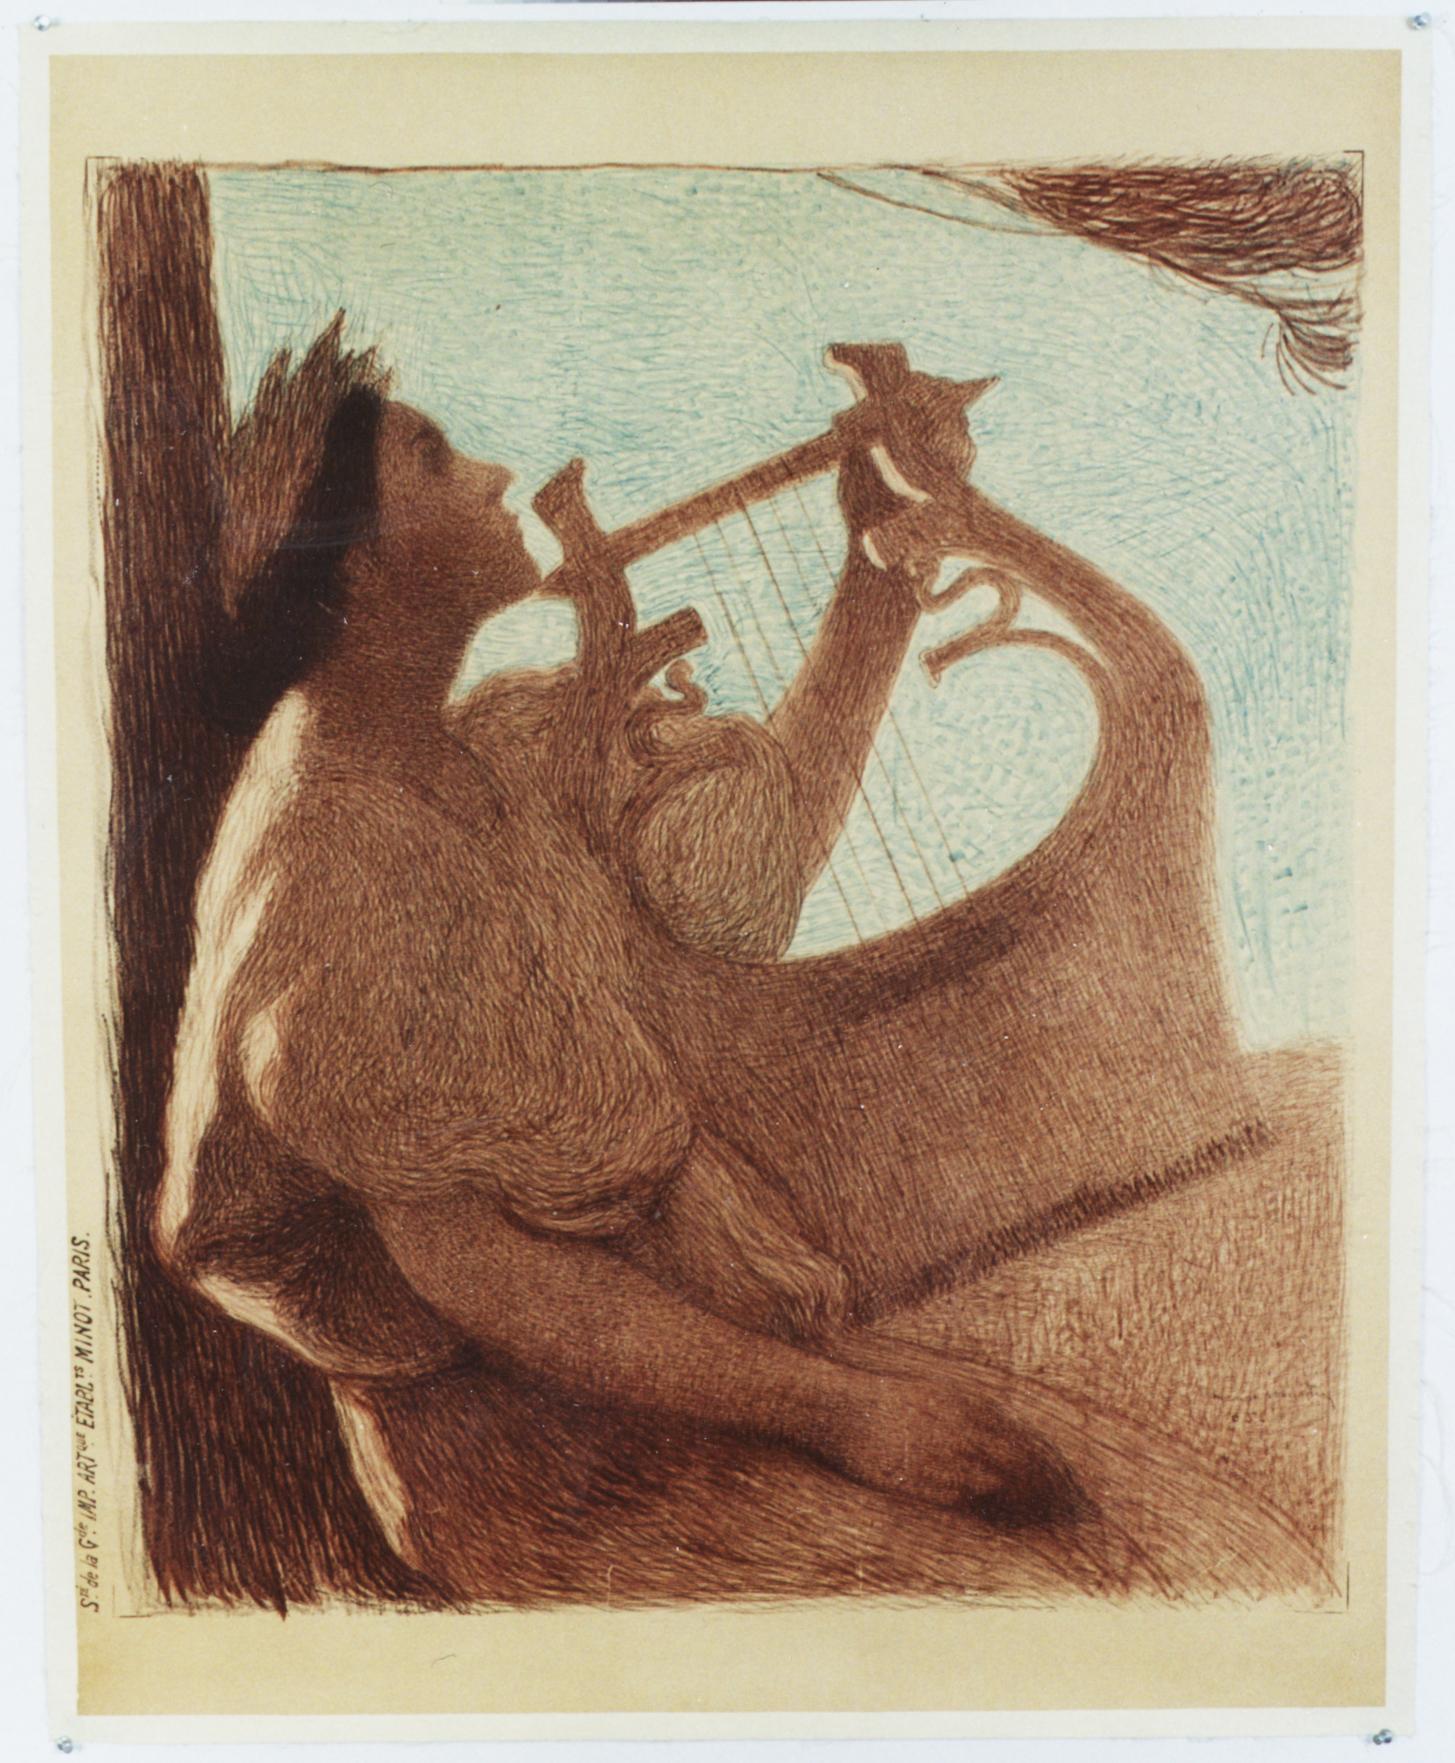  Jeune fille avec une lyre. 1905  Avant les lettres. - Print de Henri-Jean Guillaume Martin